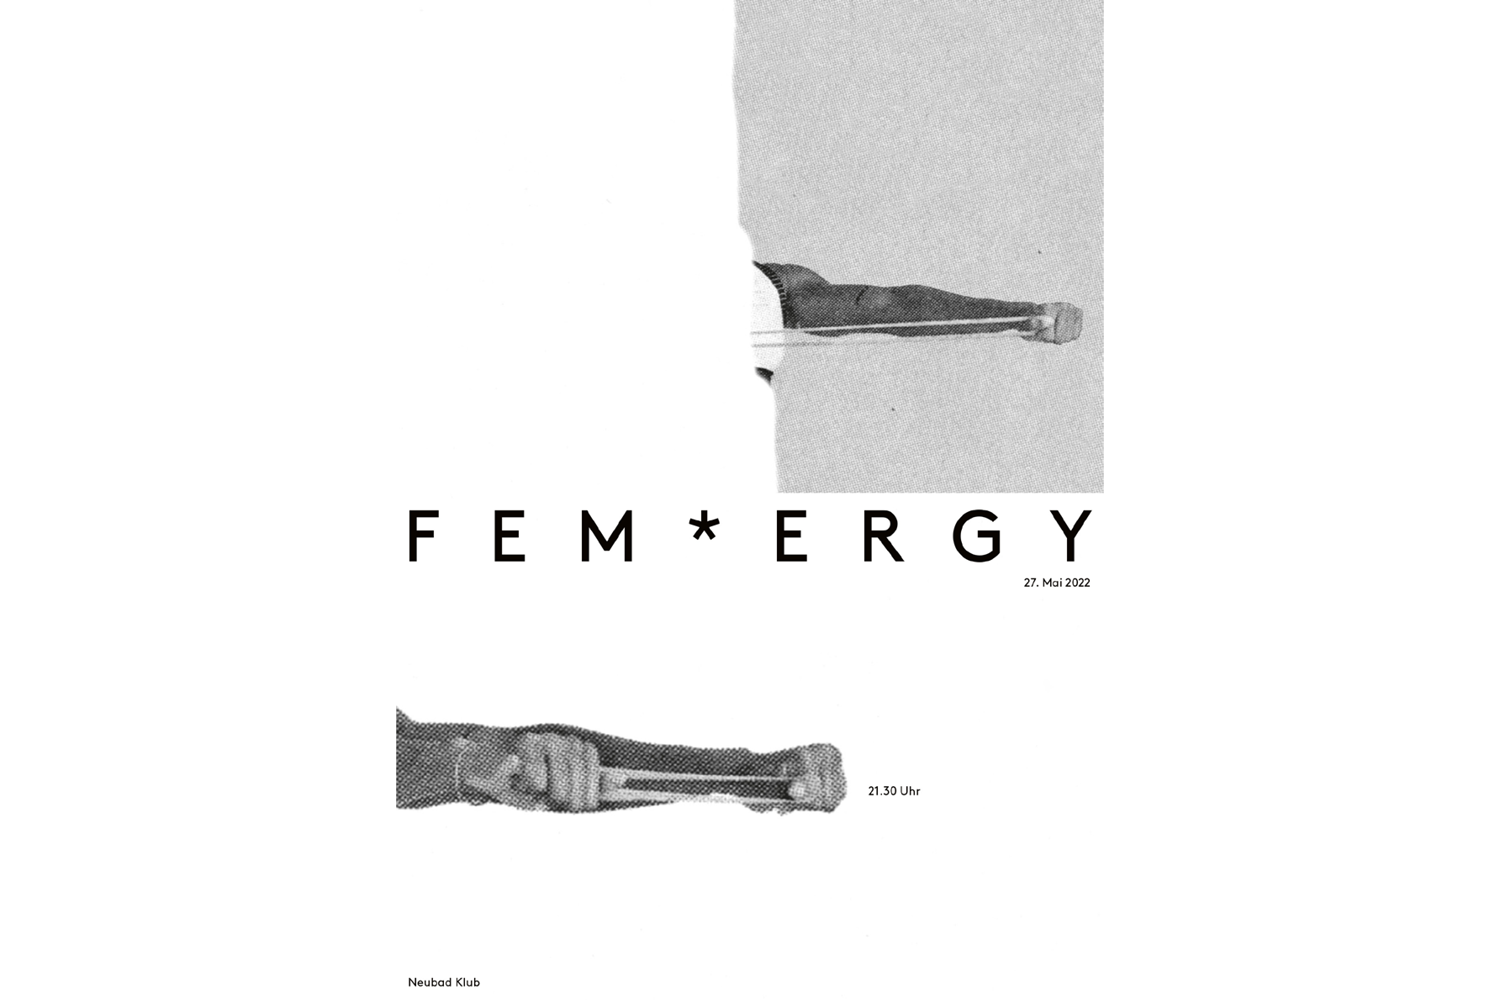 Plakat für die Veranstaltung Fem*ergy mit drei Armen auf weisser und grauer Fläche und dem Wort Fem*ergy in der Mitte geschrieben.